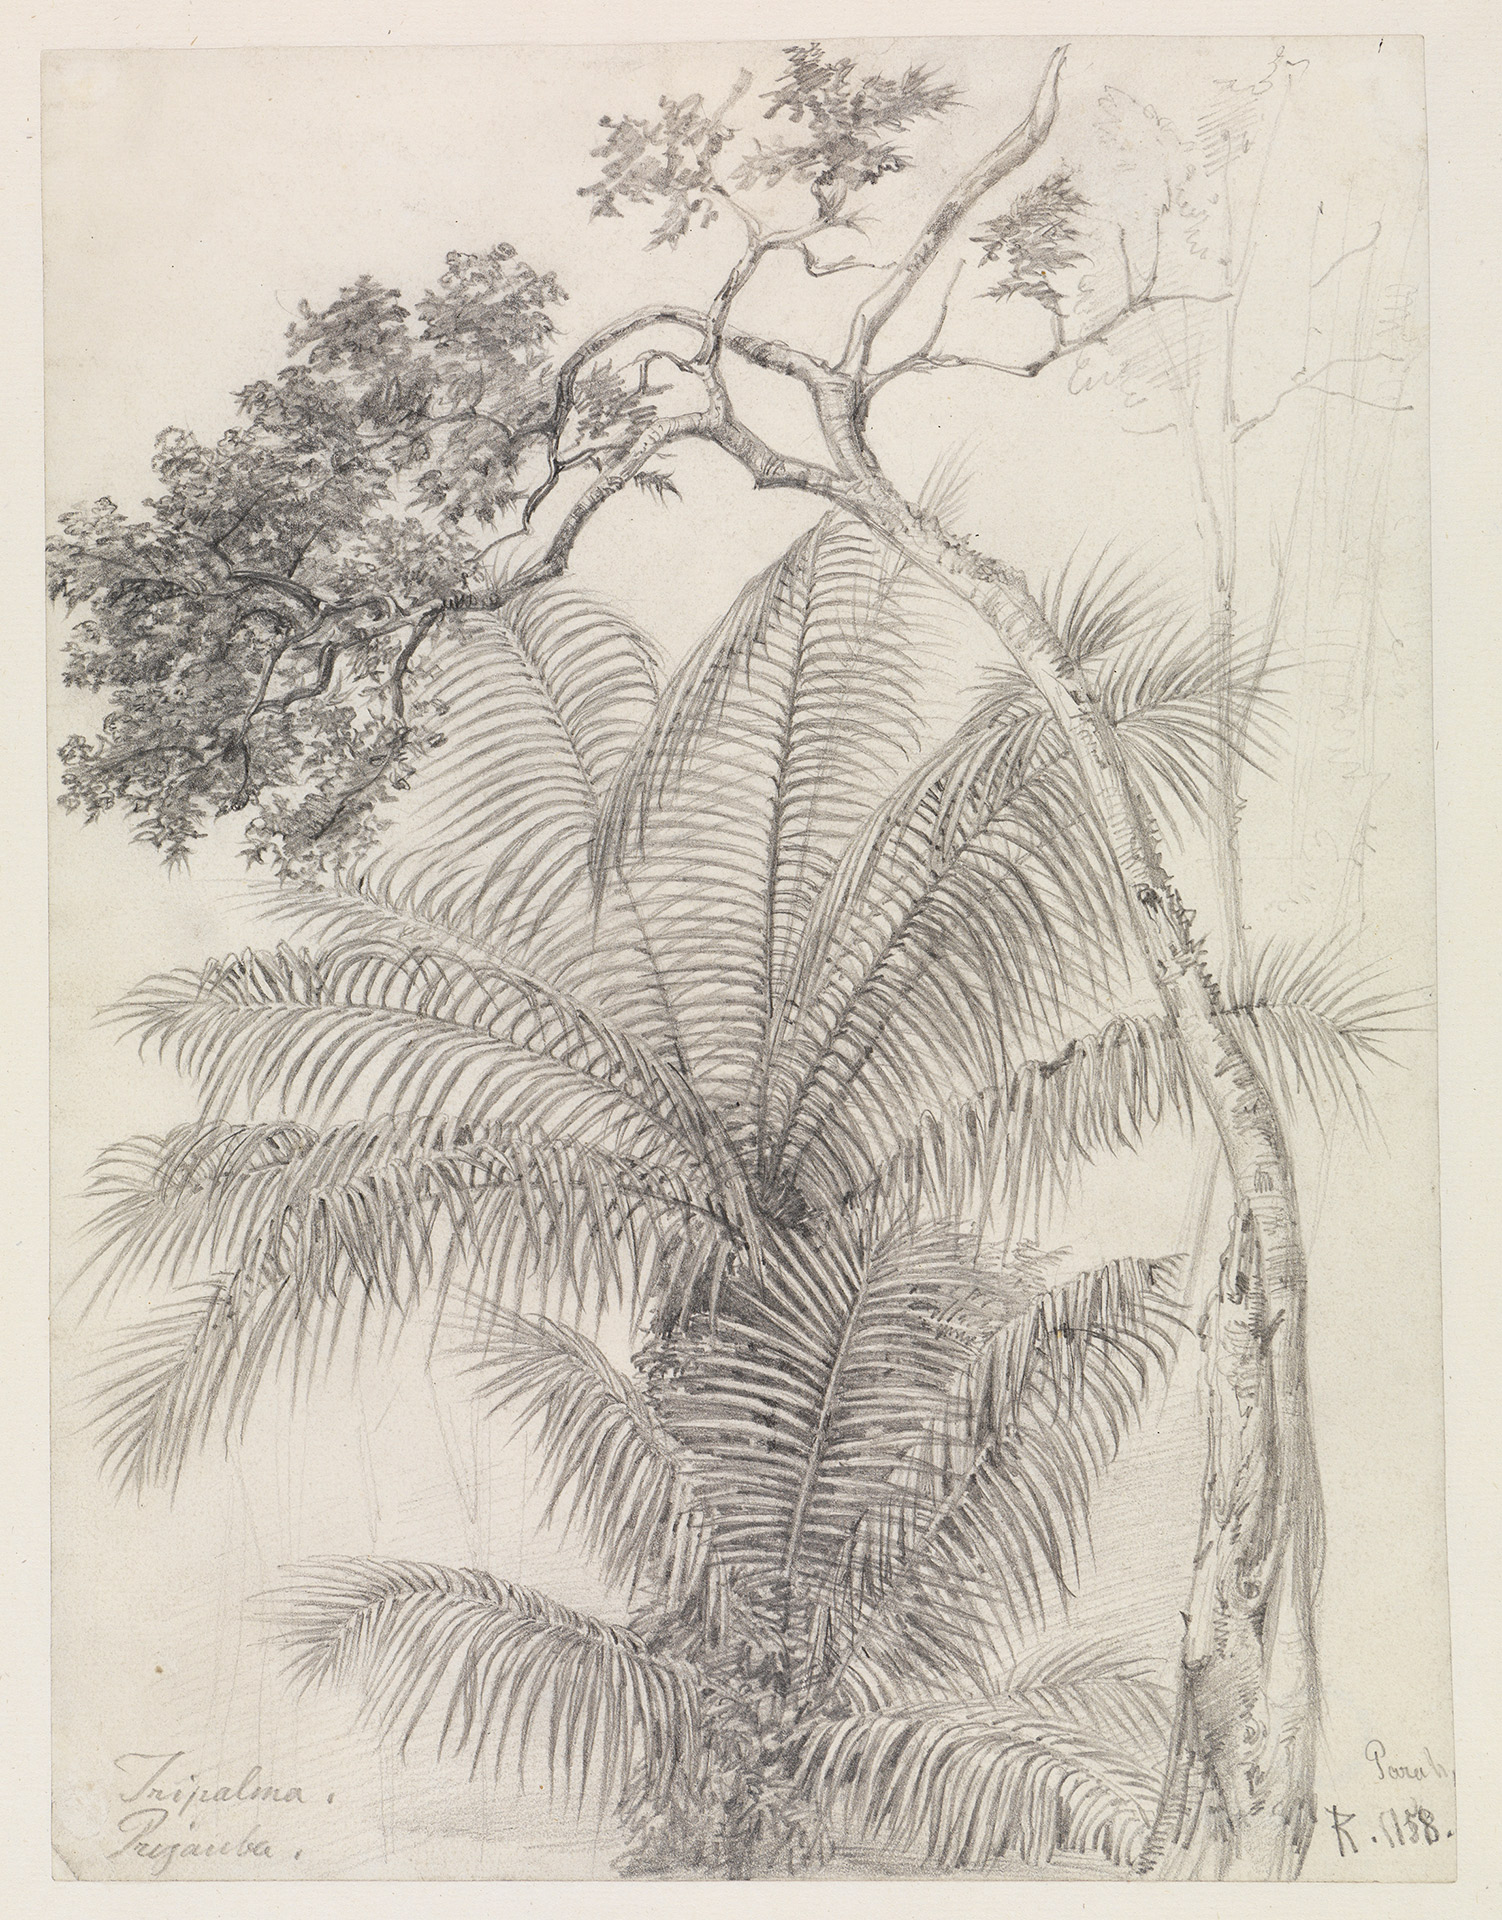 Abbildung der Zeichnung "Palmen- und Baumstudie von Ferdinand Keller aus dem Jahr 1858